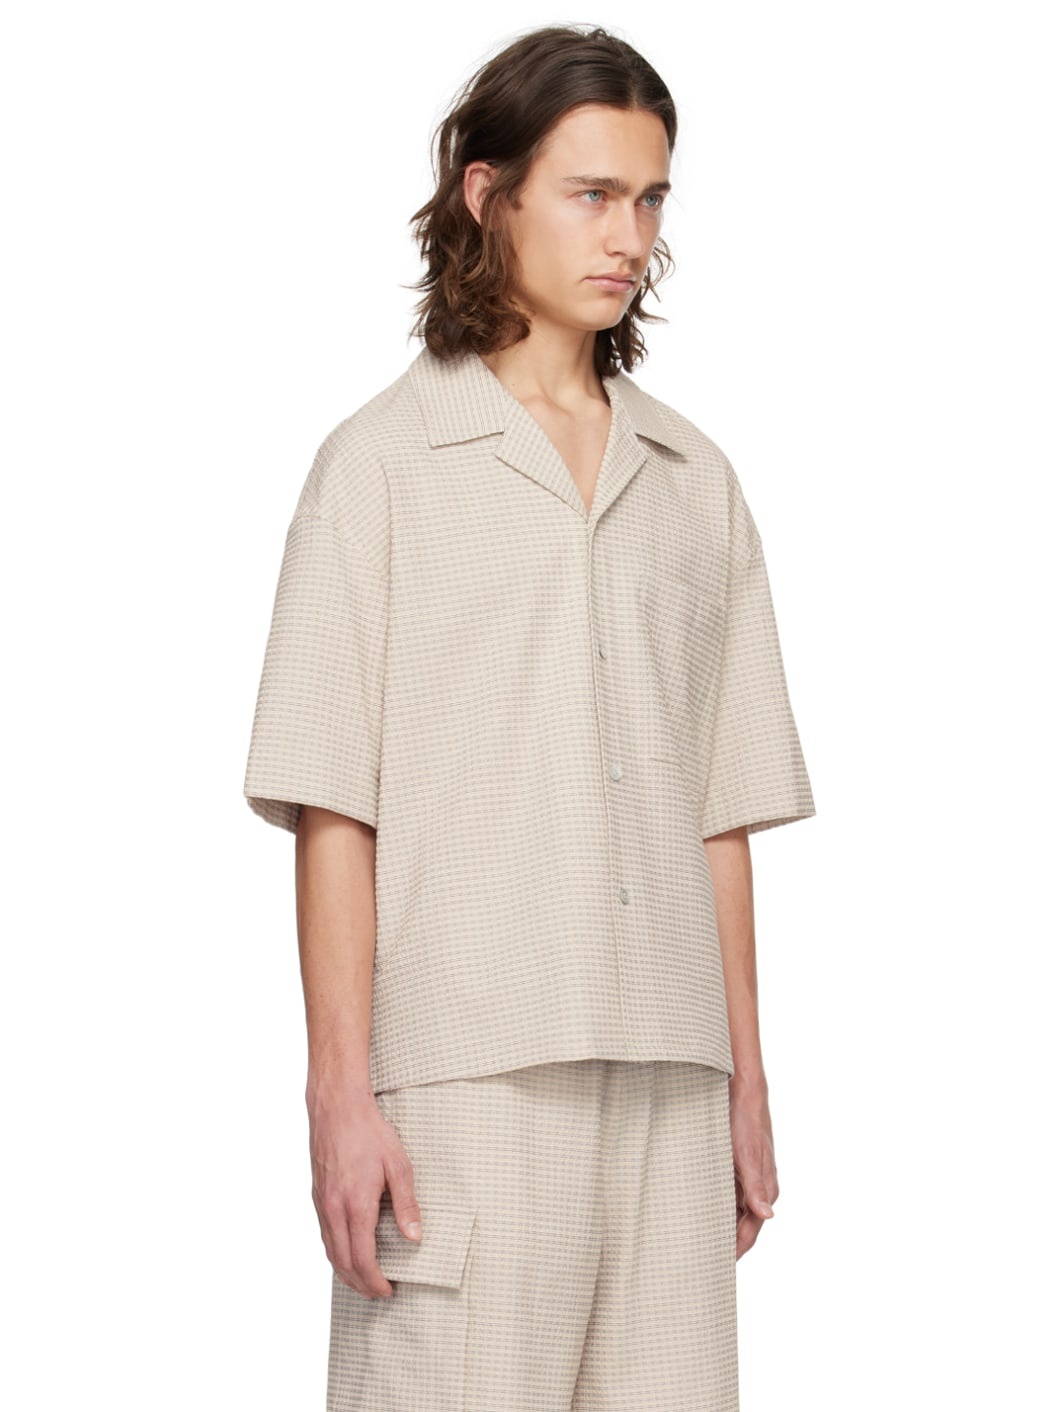 Beige Striped Shirt - 2